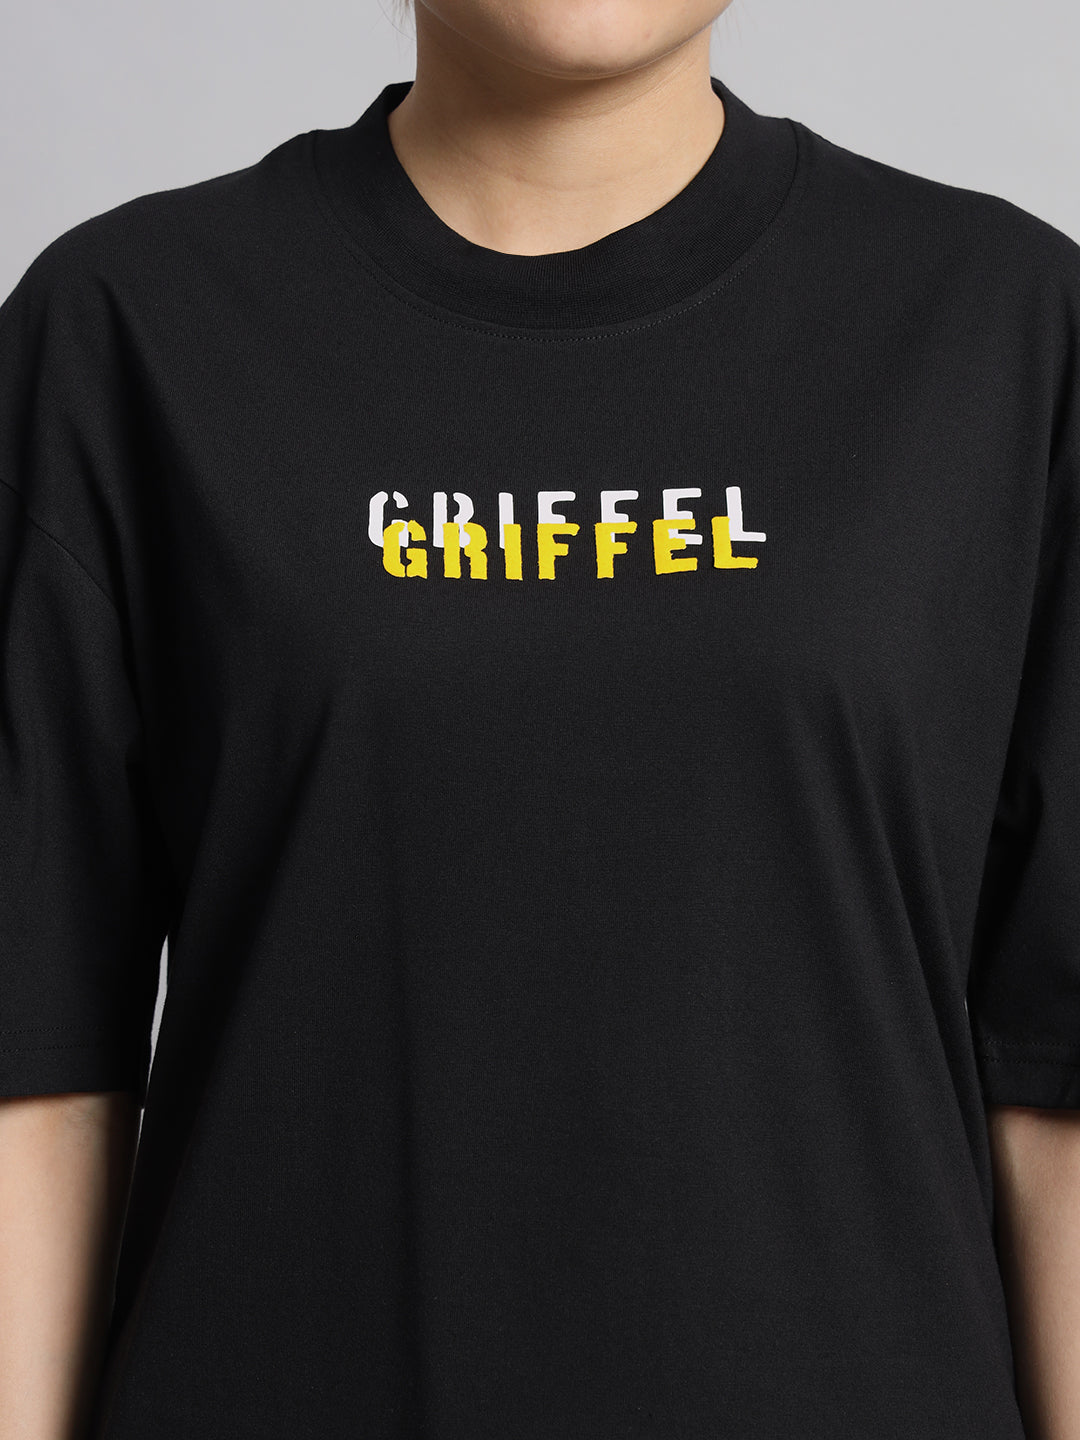 GRIFFEL Women T-shirt and Short Set